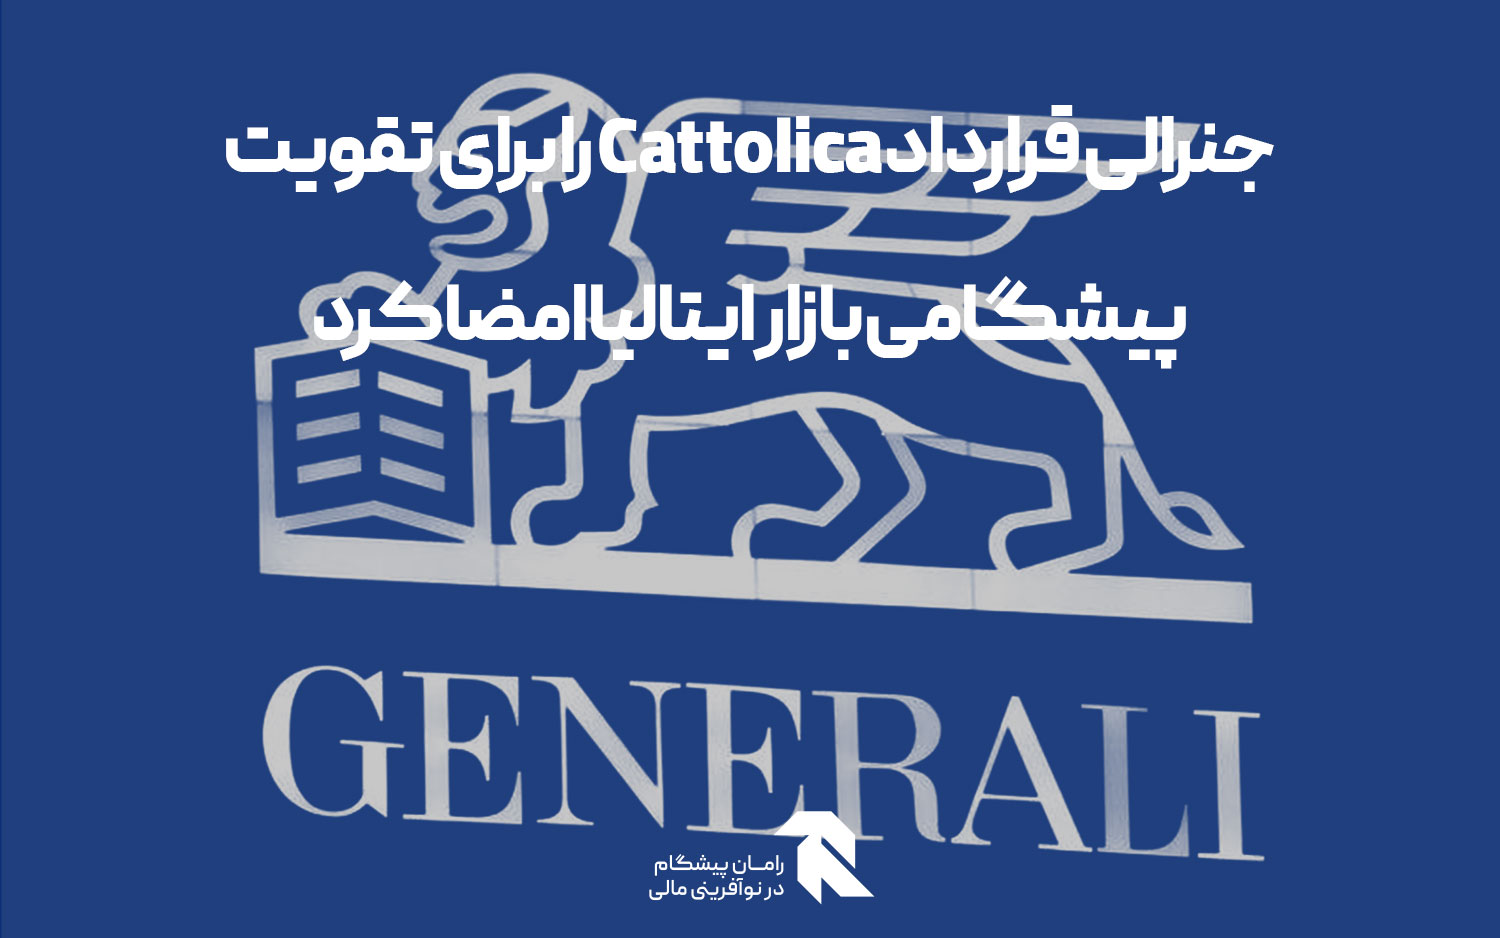 جنرالی قرارداد Cattolica را برای تقویت پیشگامی بازار ایتالیا امضا کرد